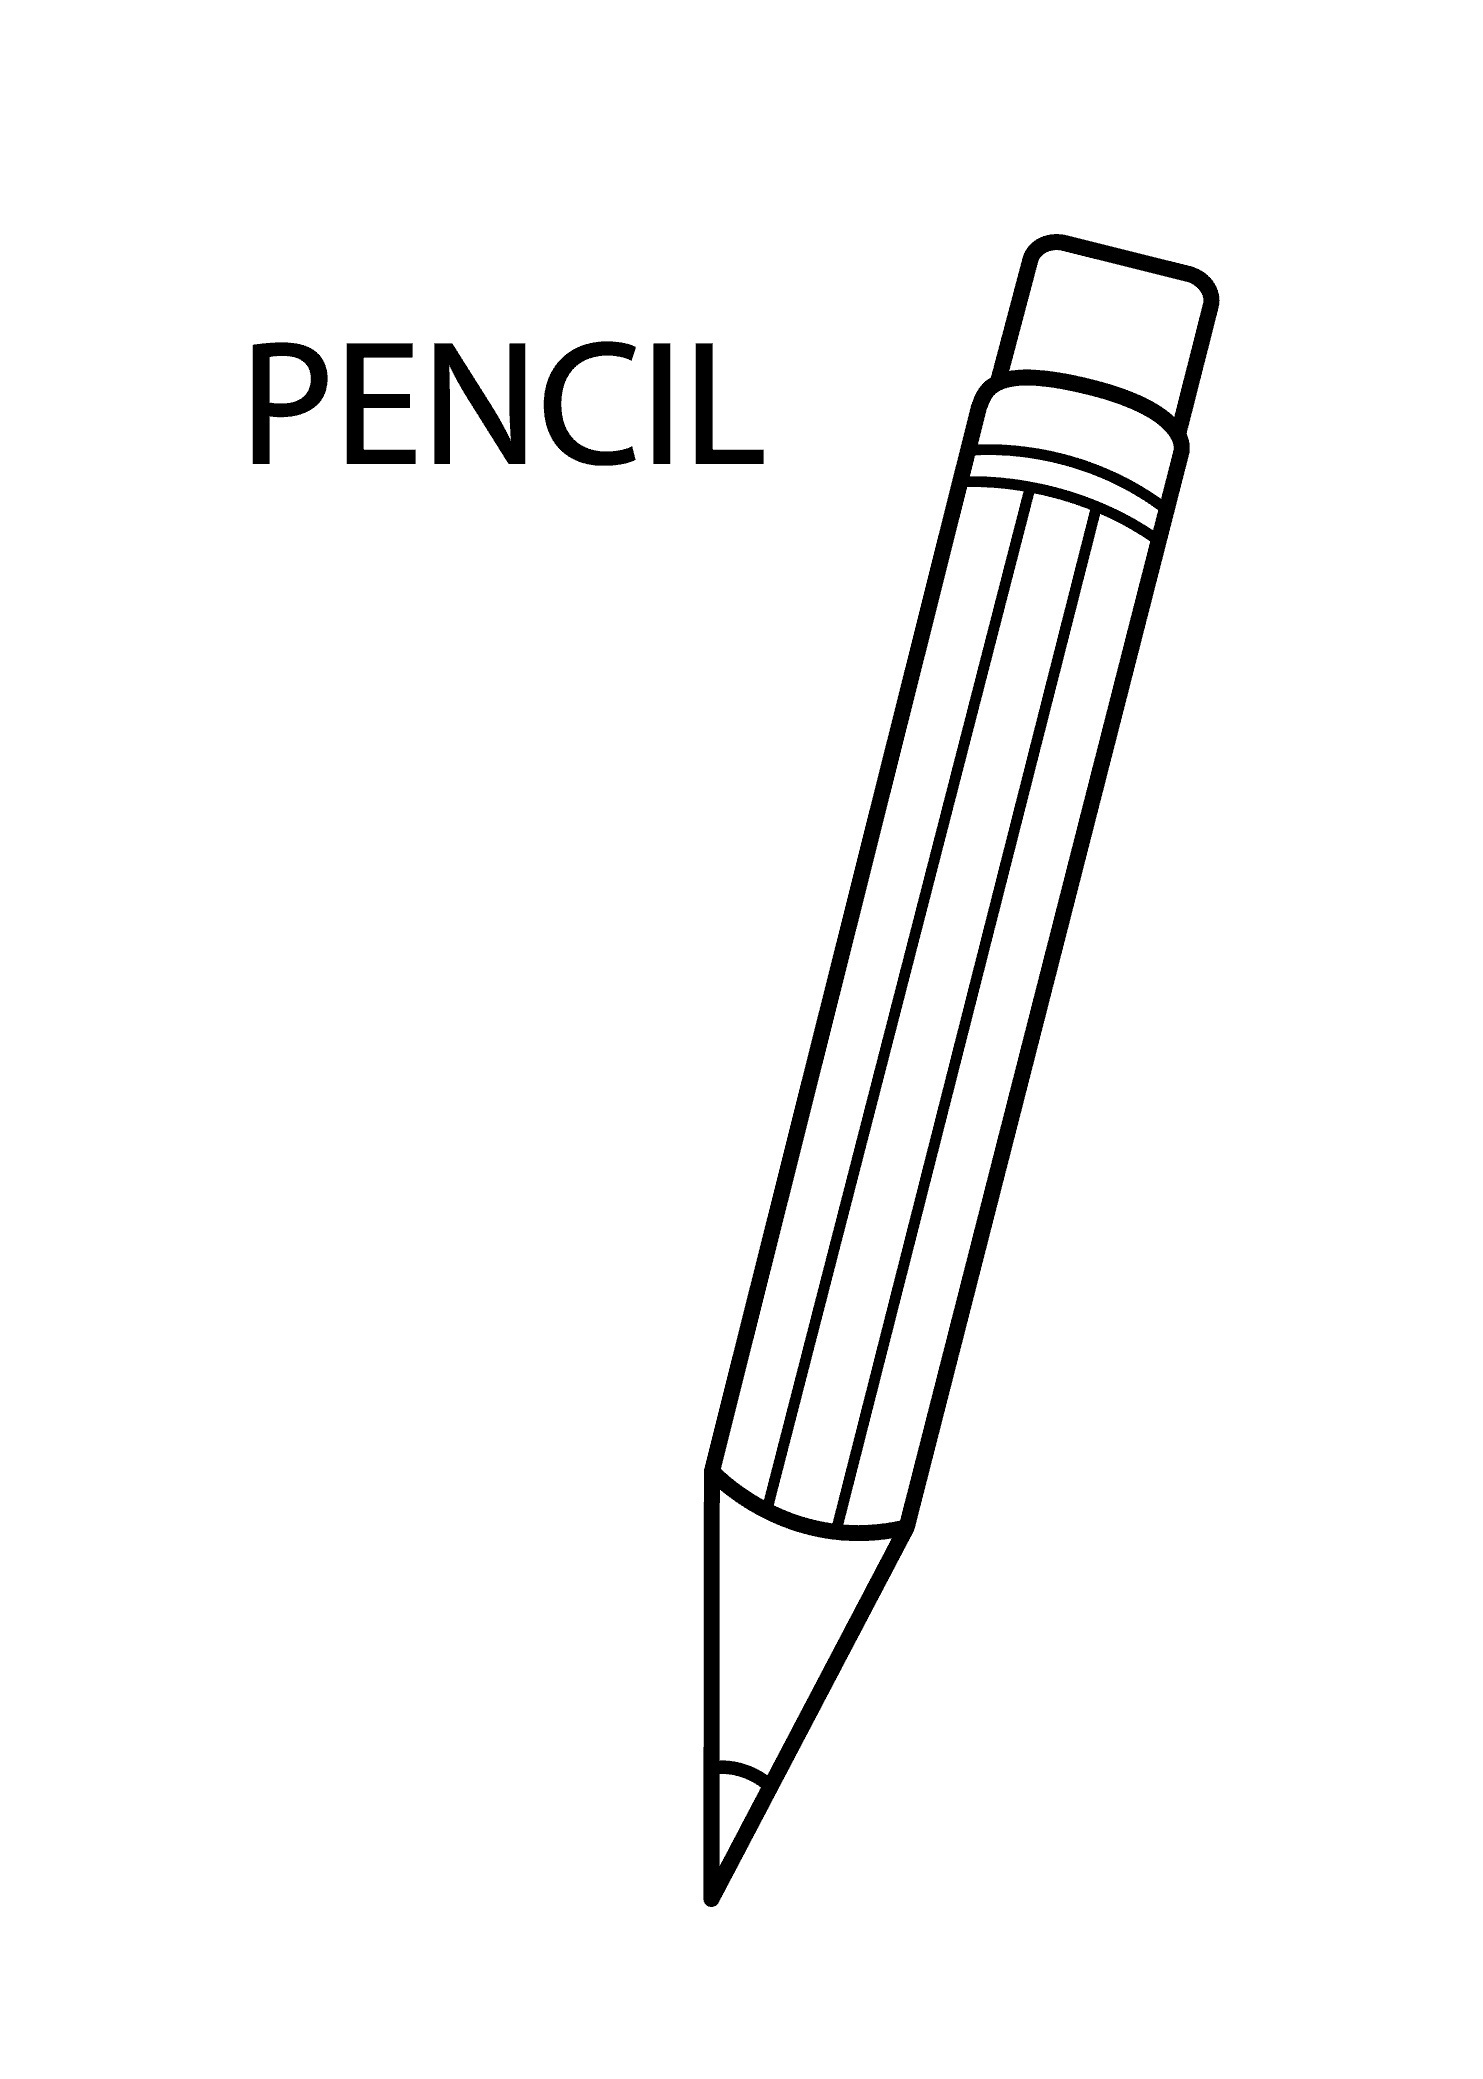 Pen по английски. Раскраска с карандашами. Карандаш раскраска для детей. Ручка раскраска. Ручка раскраска для детей.